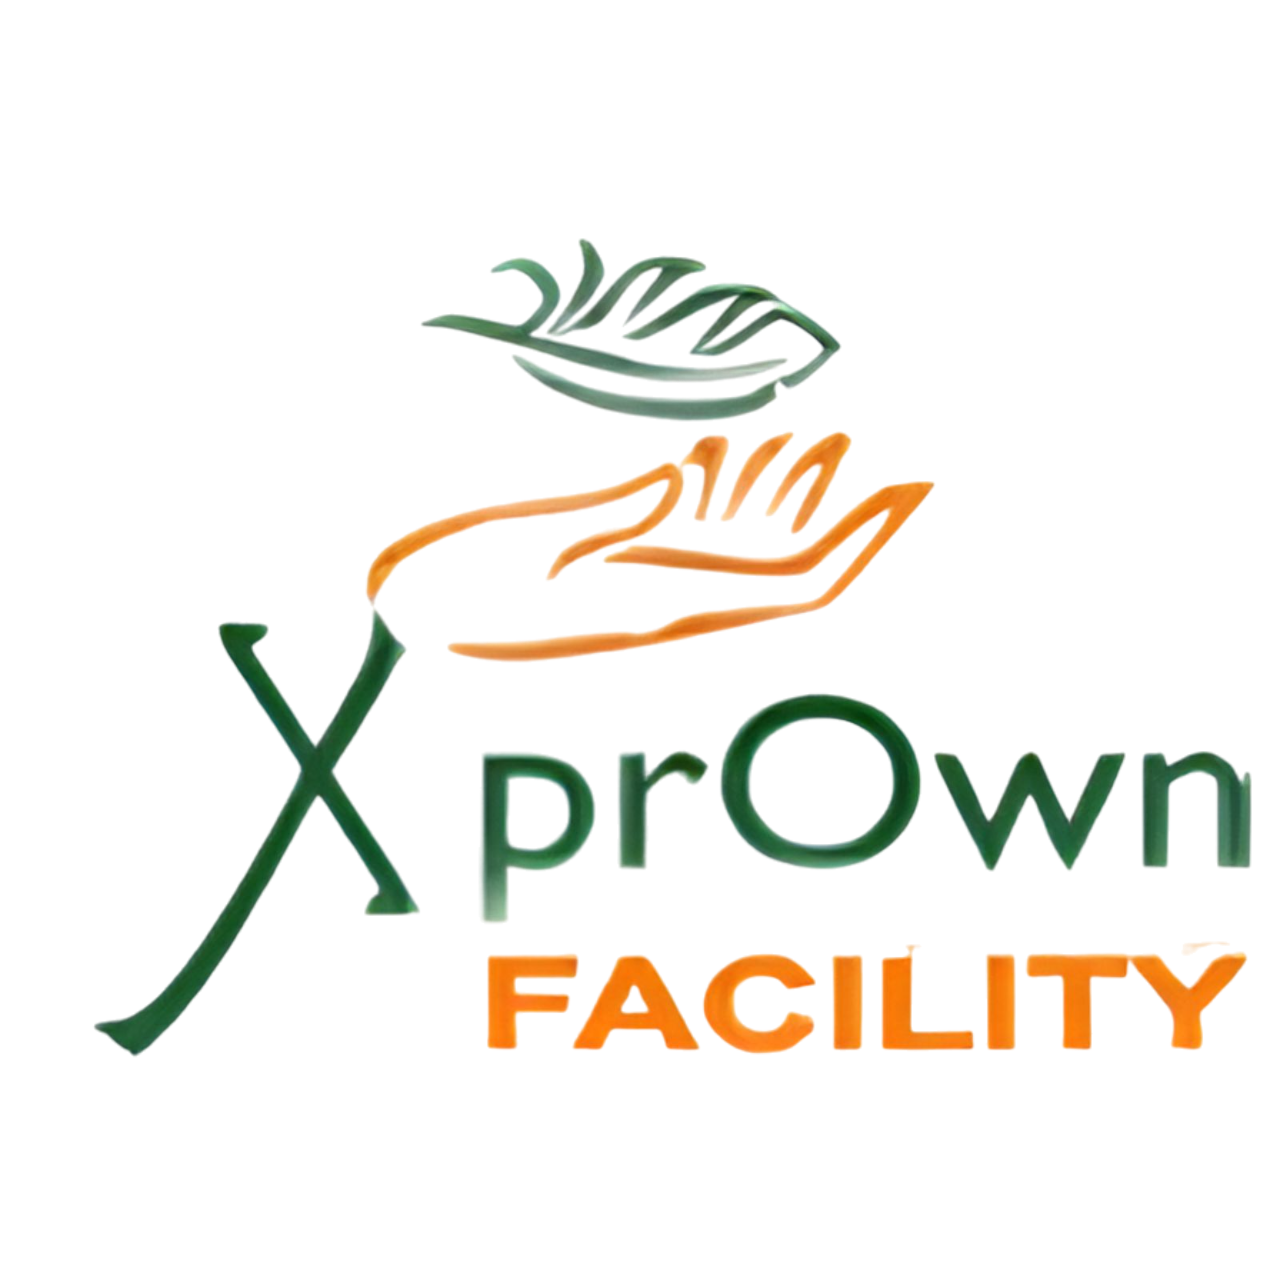 xprown facilities logo